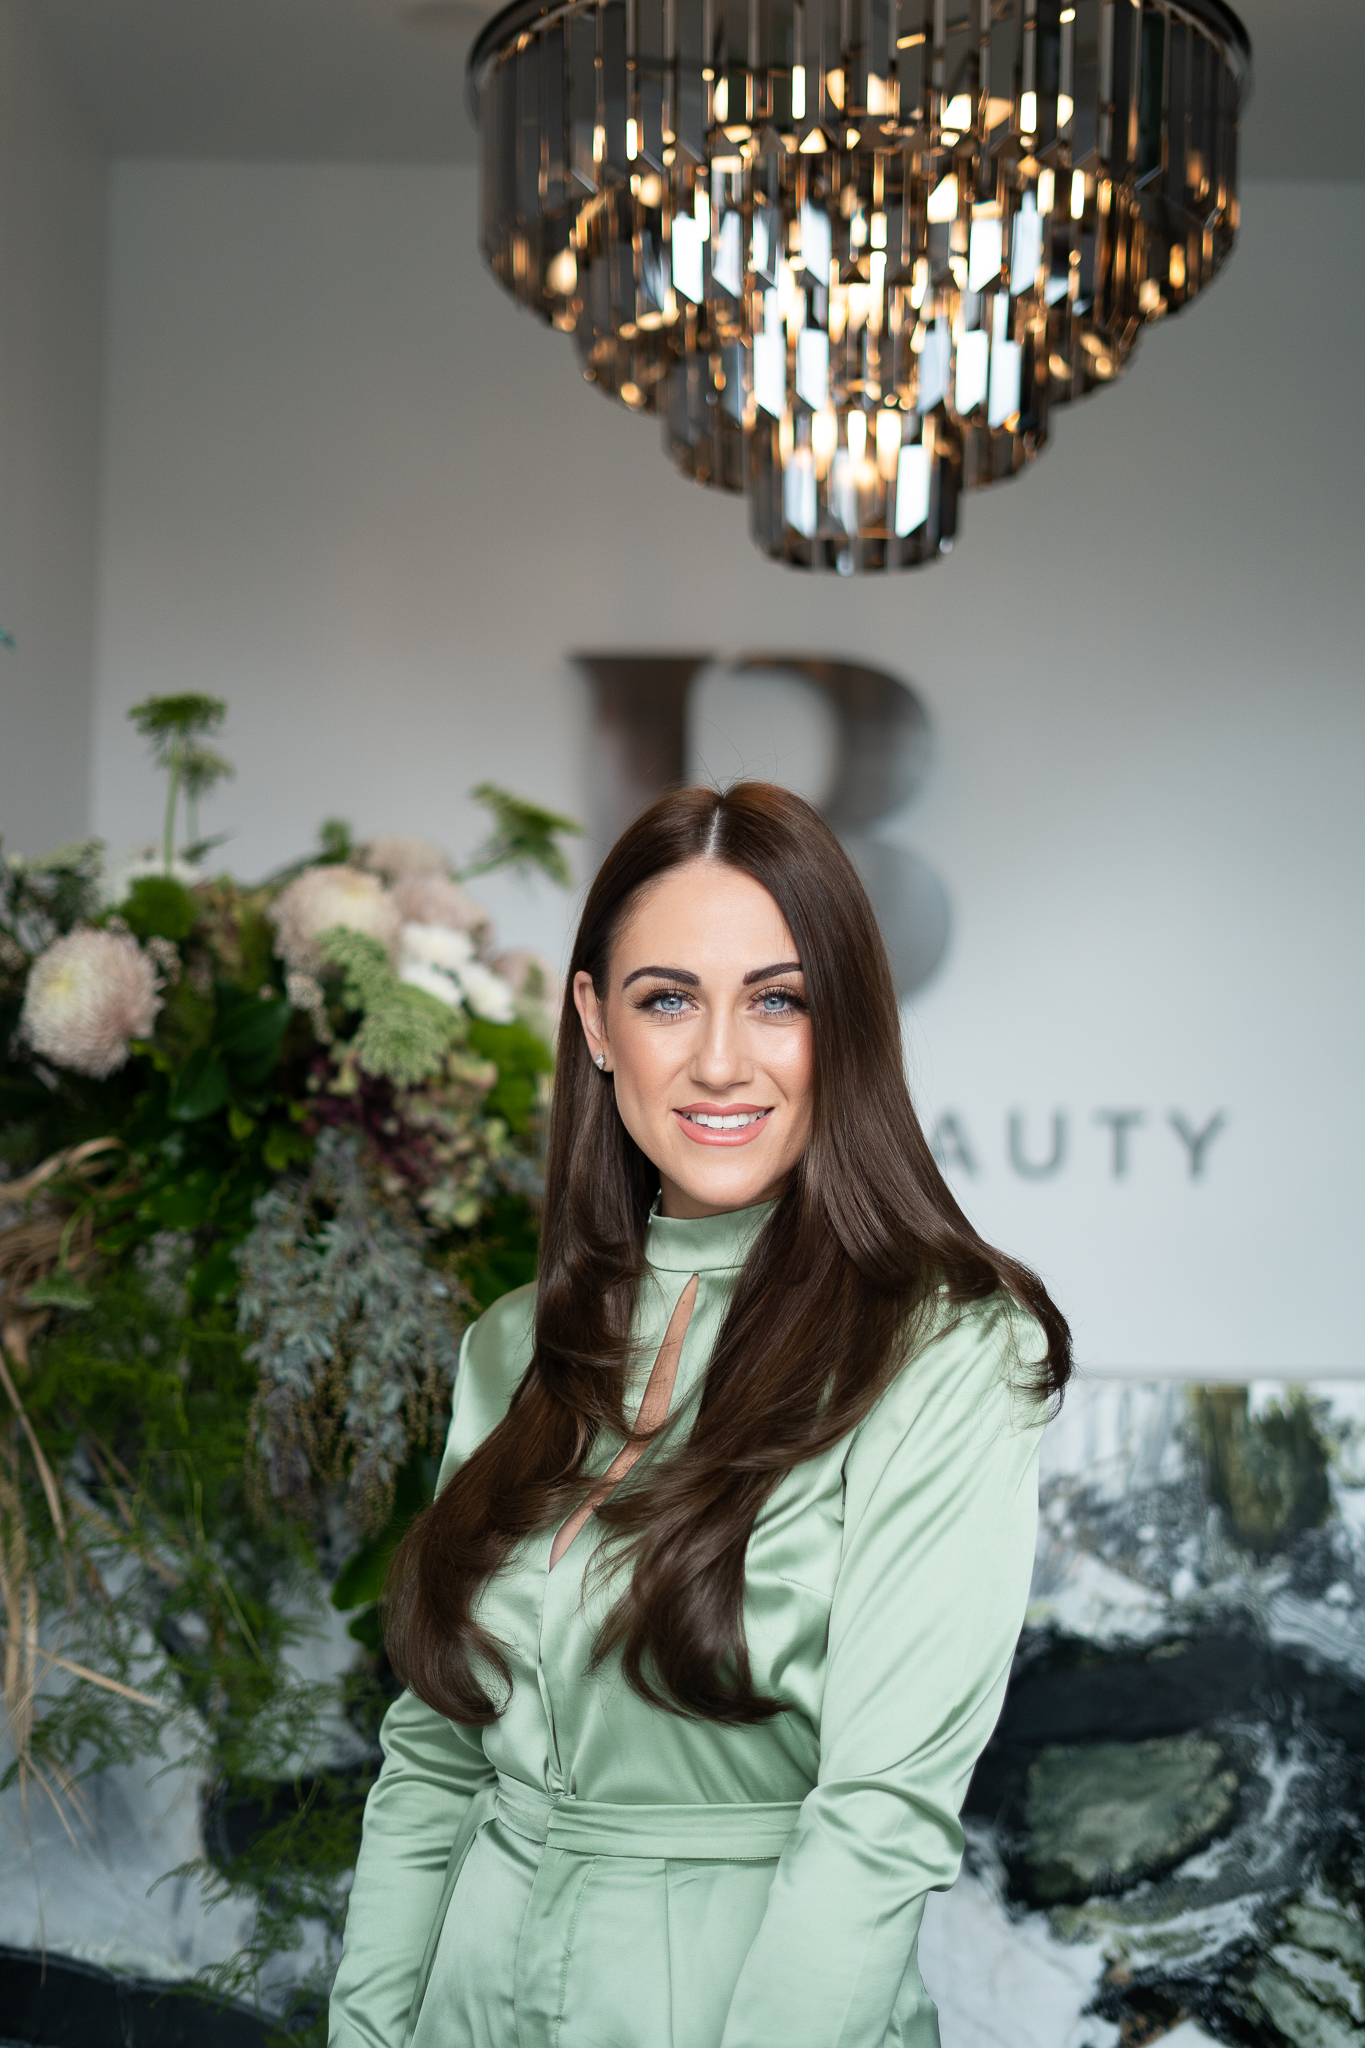 Ignatia- Owner of salon